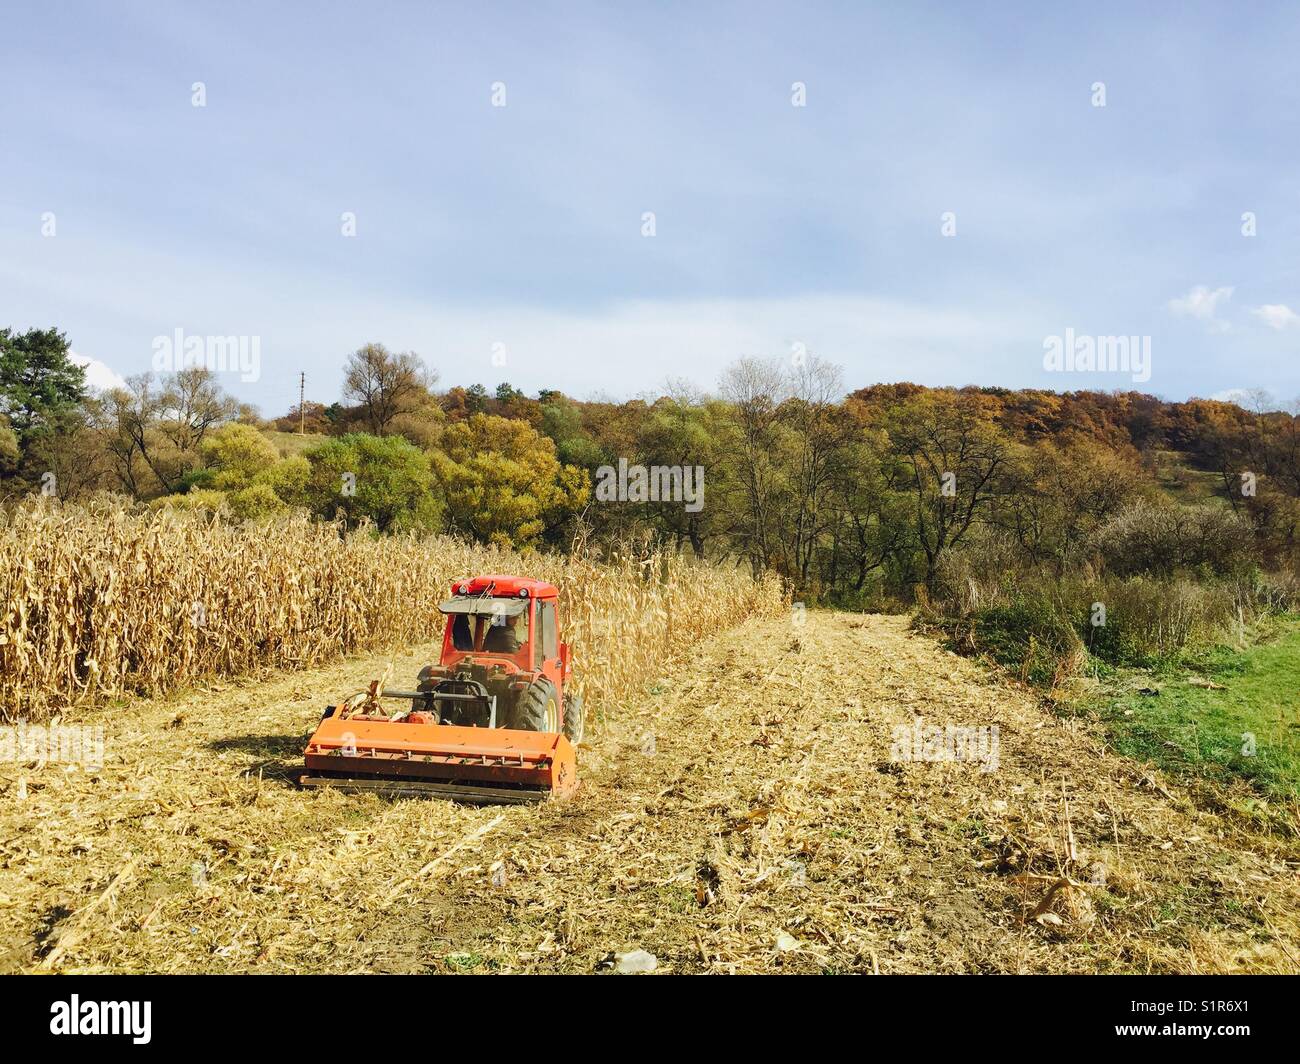 Traktor reinigen der Mais Felder mit einem schredder nach Erntegut  Stockfotografie - Alamy